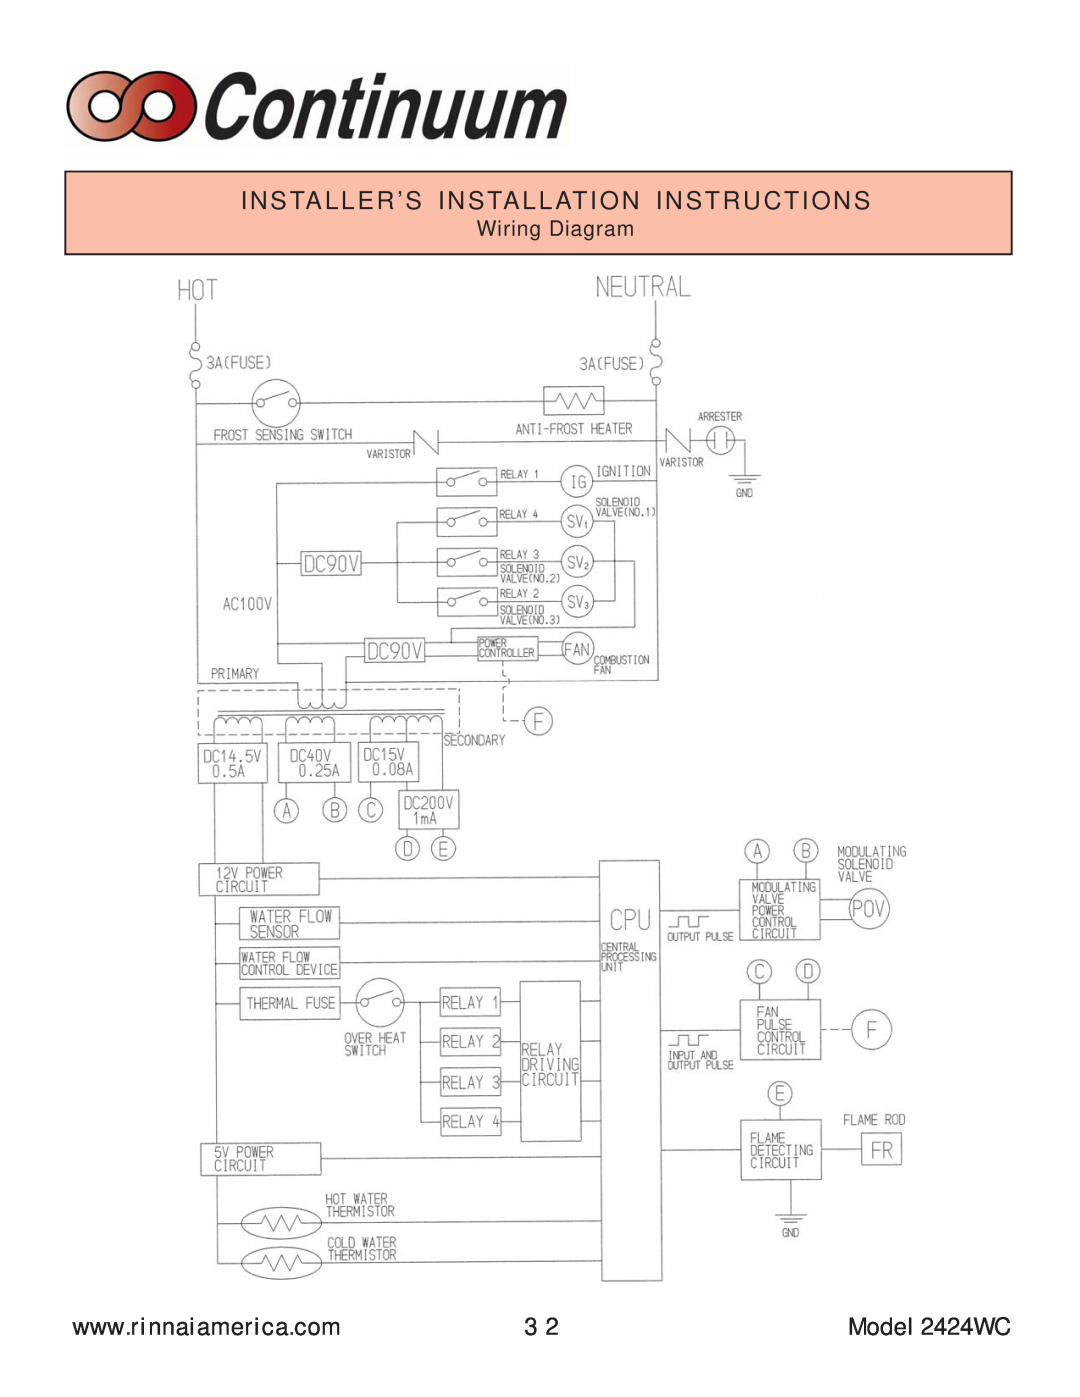 Rinnai manual Installer’S Installation Instructions, Model 2424WC 